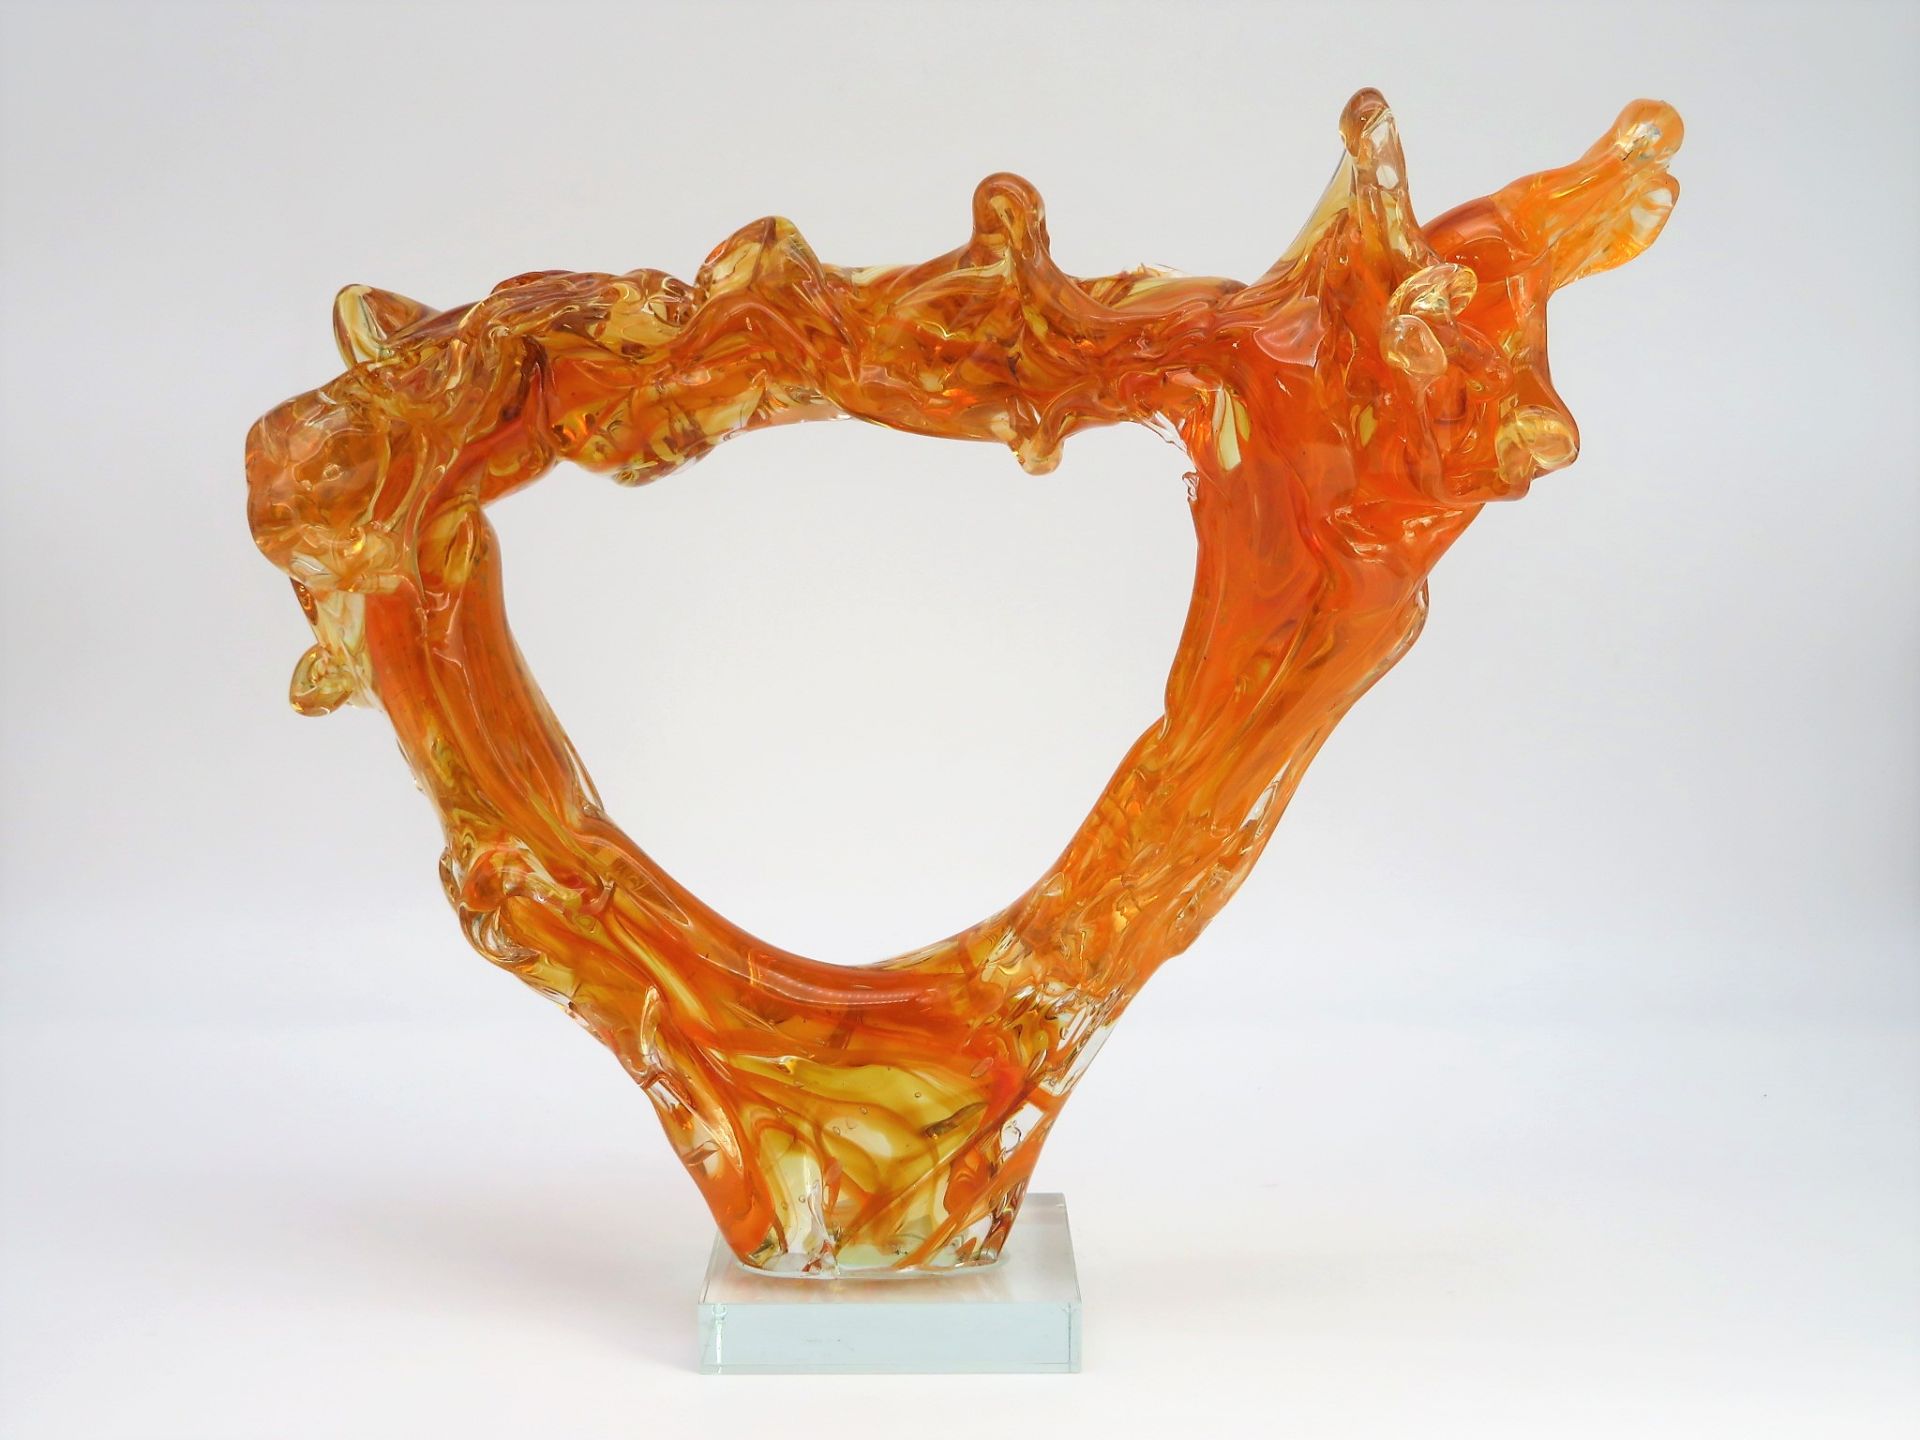 Designer-Glasobjekt in Form einer Wasserfontäne, orangefarben eingefärbtes Glas, auf gläsernem, tra